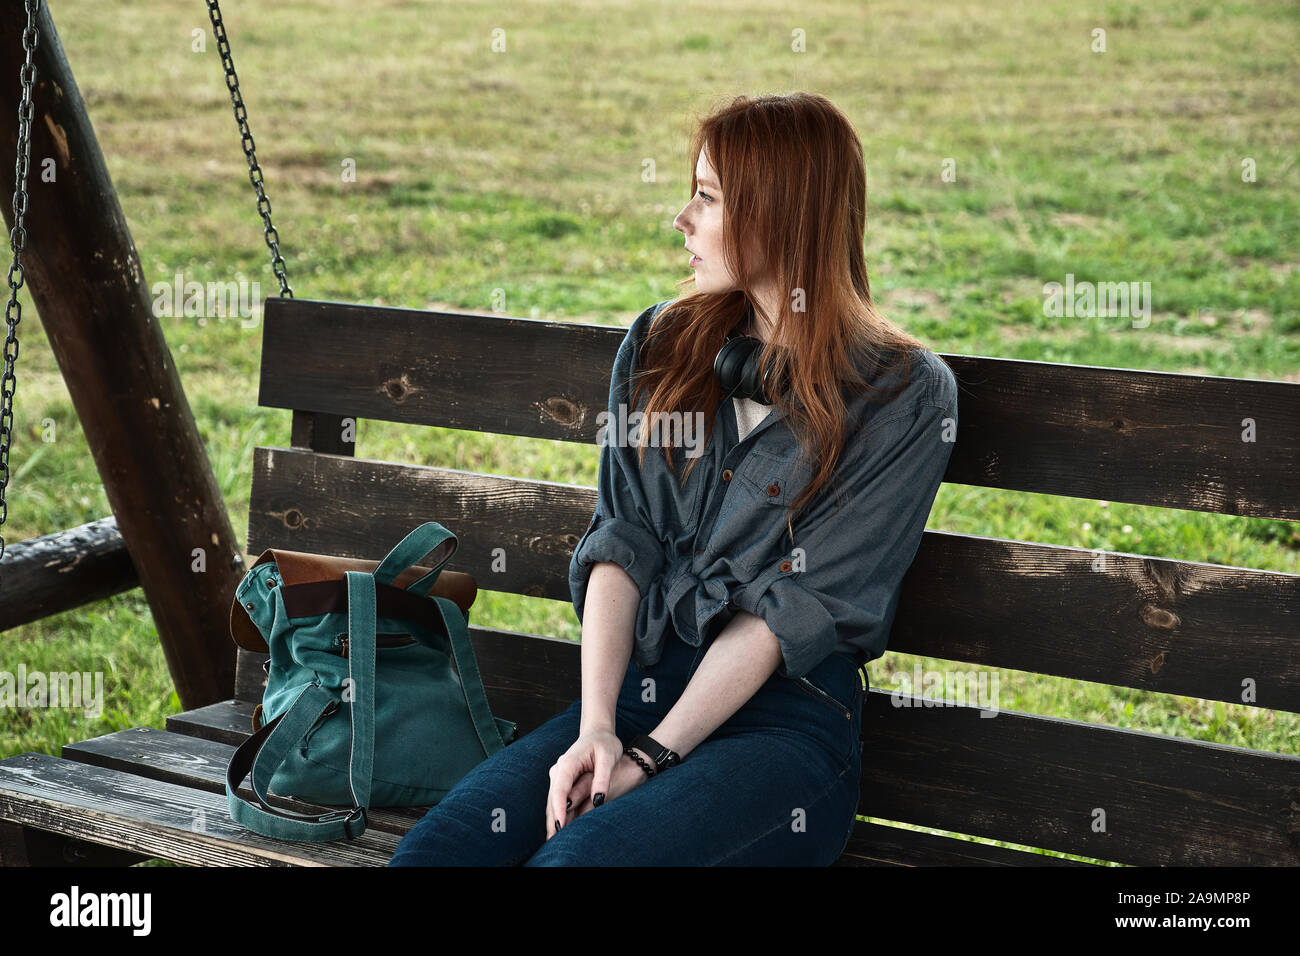 Fille aux cheveux roux est assis avec un sac à dos sur un banc de bois swing et regarde ailleurs. Banque D'Images